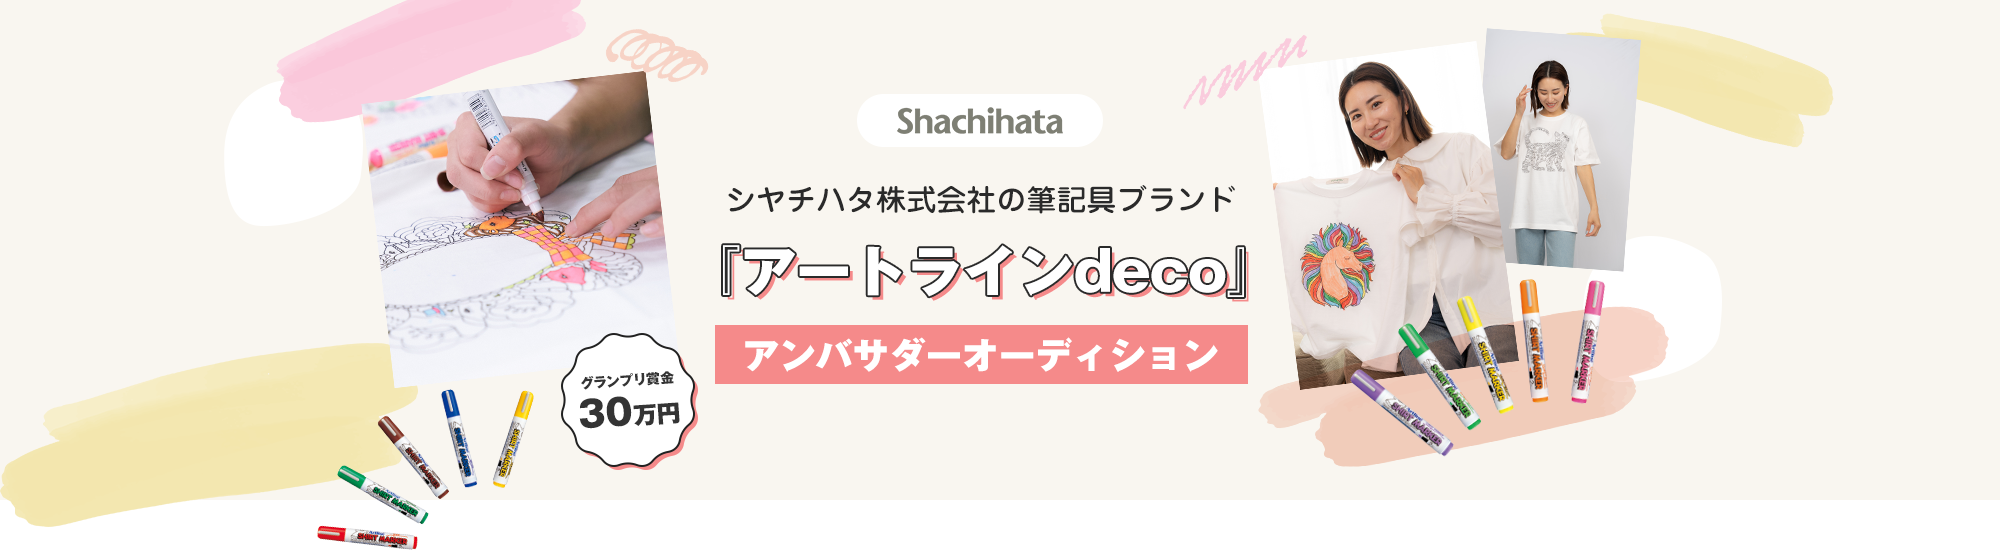 Shachihata　シヤチハタ株式会社の筆記具ブランド『アートラインdeco』アンバサダーオーディション